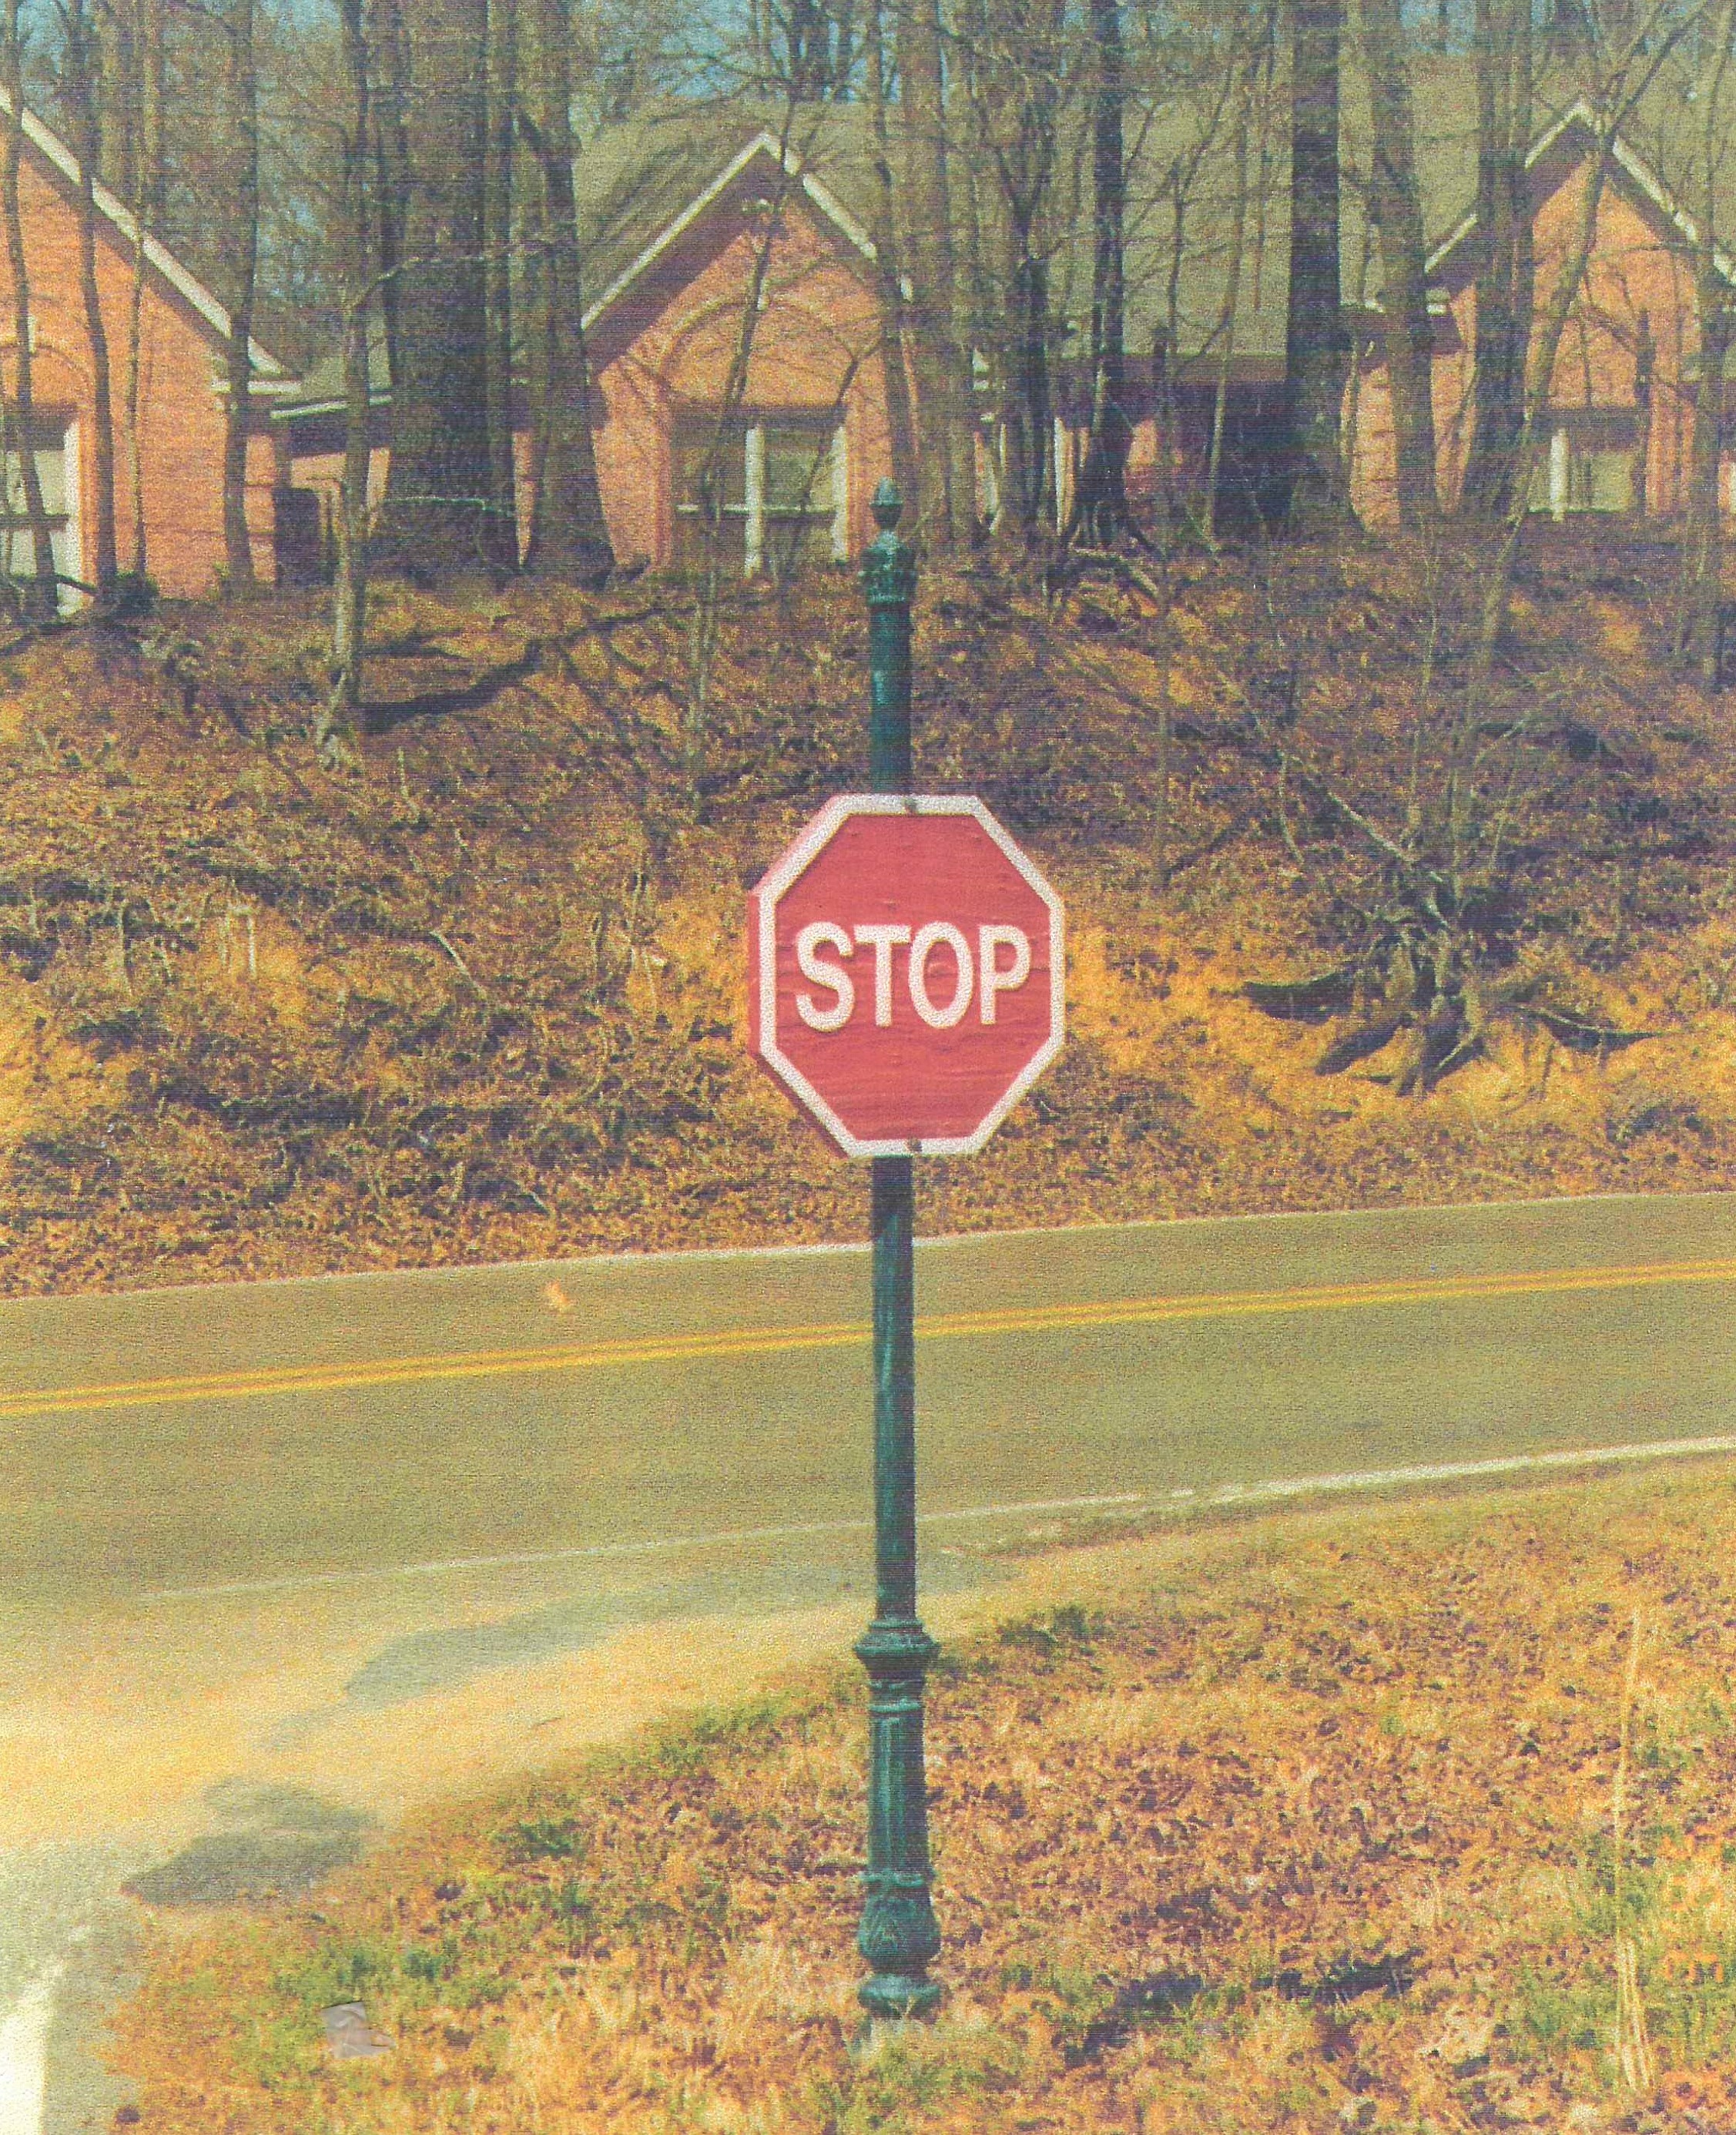 https://0201.nccdn.net/1_2/000/000/153/5d8/stop-sign-post.jpeg